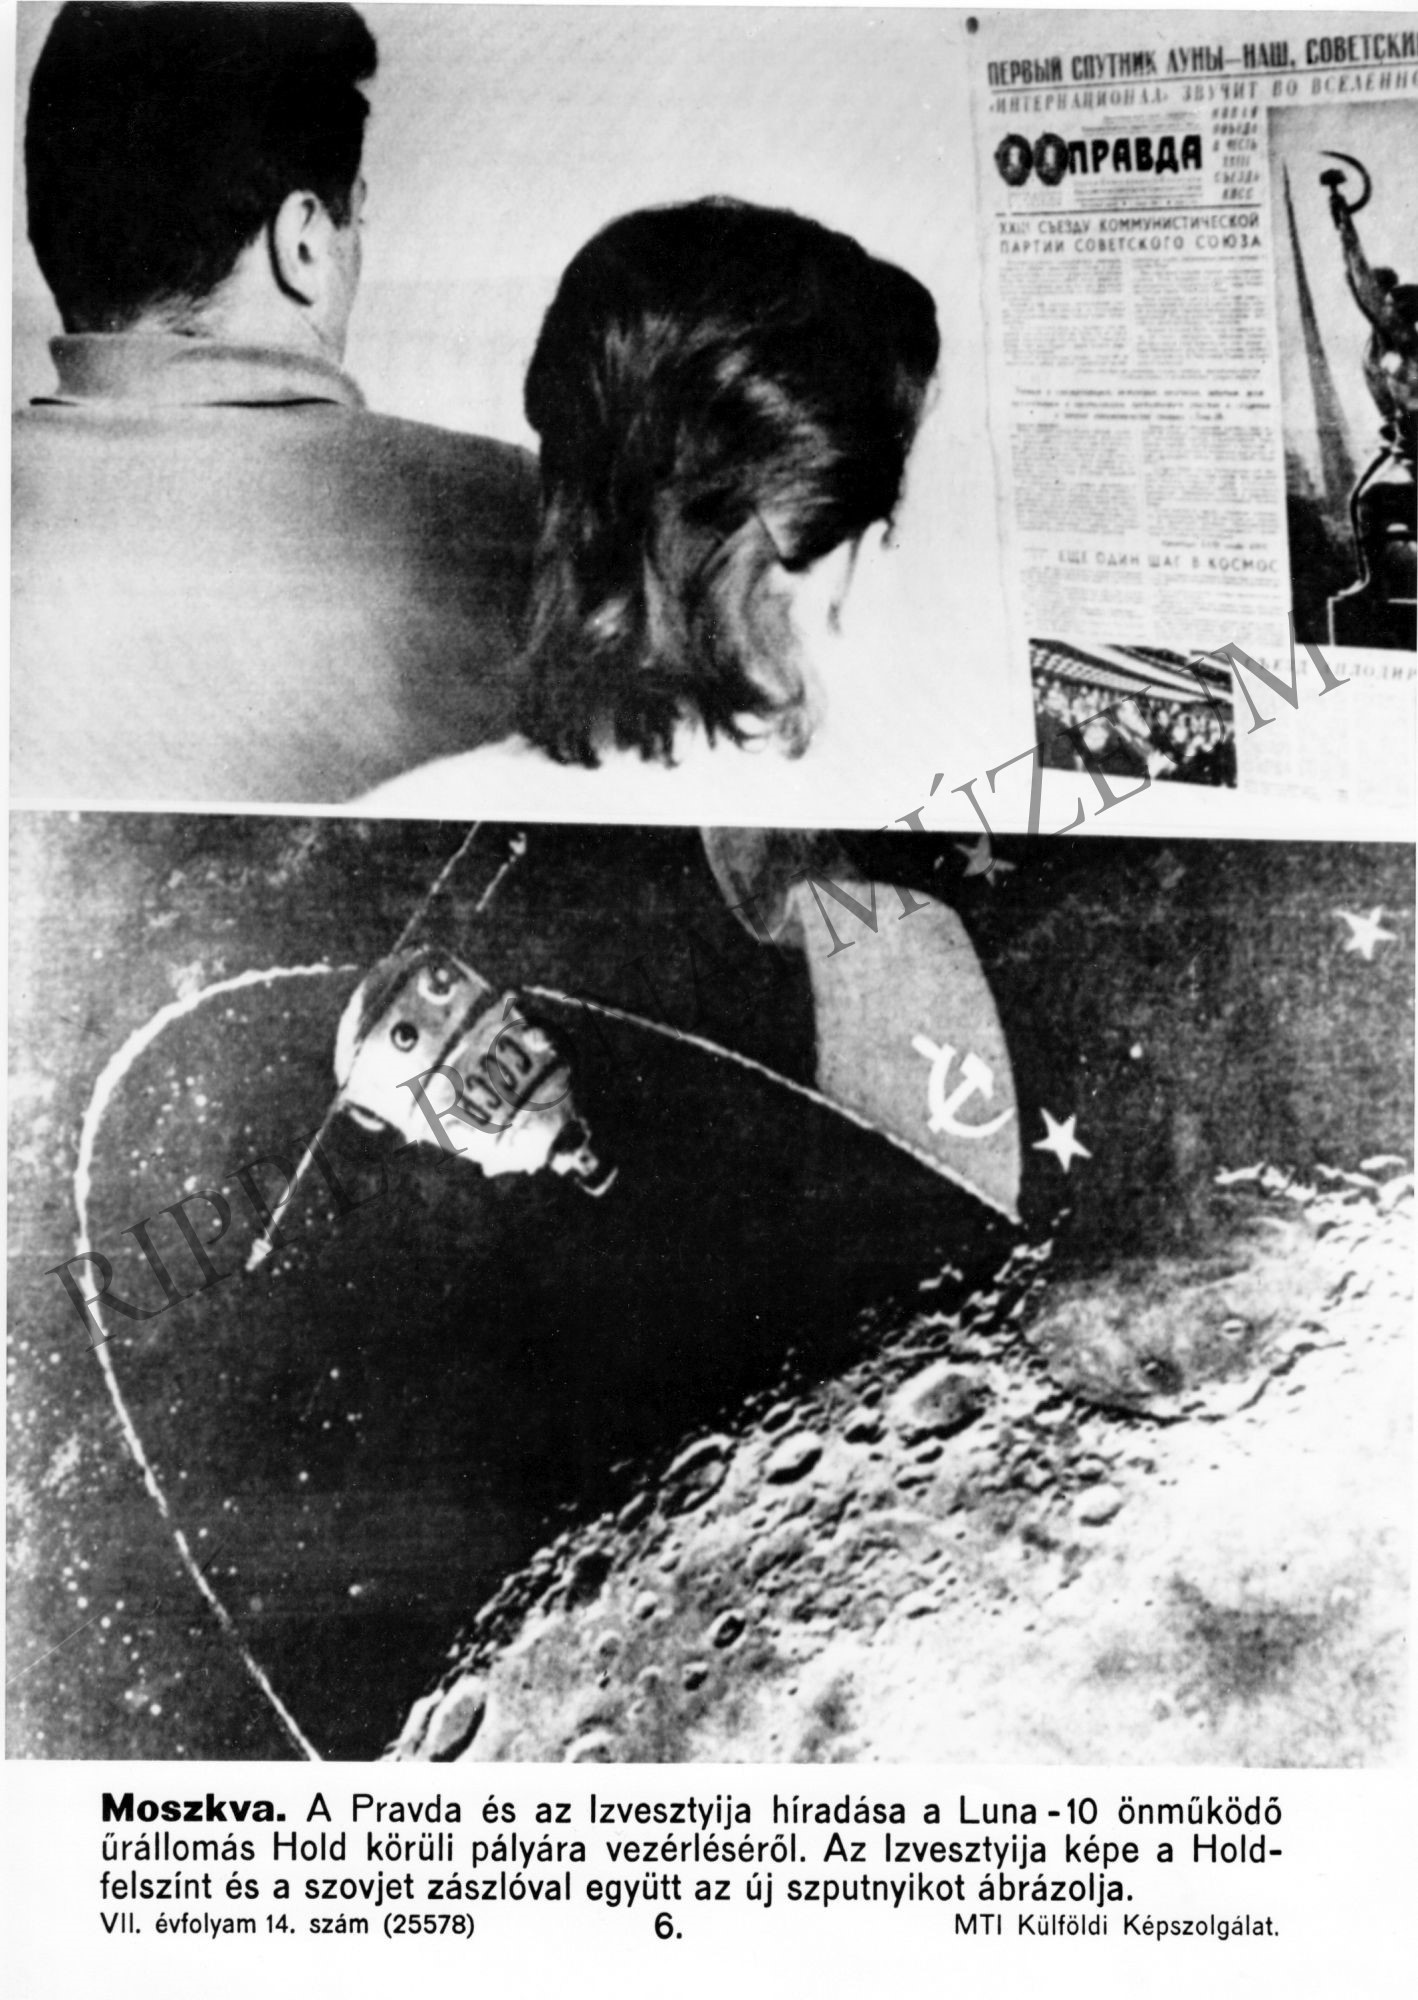 Kétosztatú kép a szovjet űrkutatásról.
1. A Pravda és az Izvesztyija híradása a Luna-10 önműködő űrállomás Hold körüli pályára vezérléséről.
2. A kép a Hold-fel (Rippl-Rónai Múzeum CC BY-NC-SA)